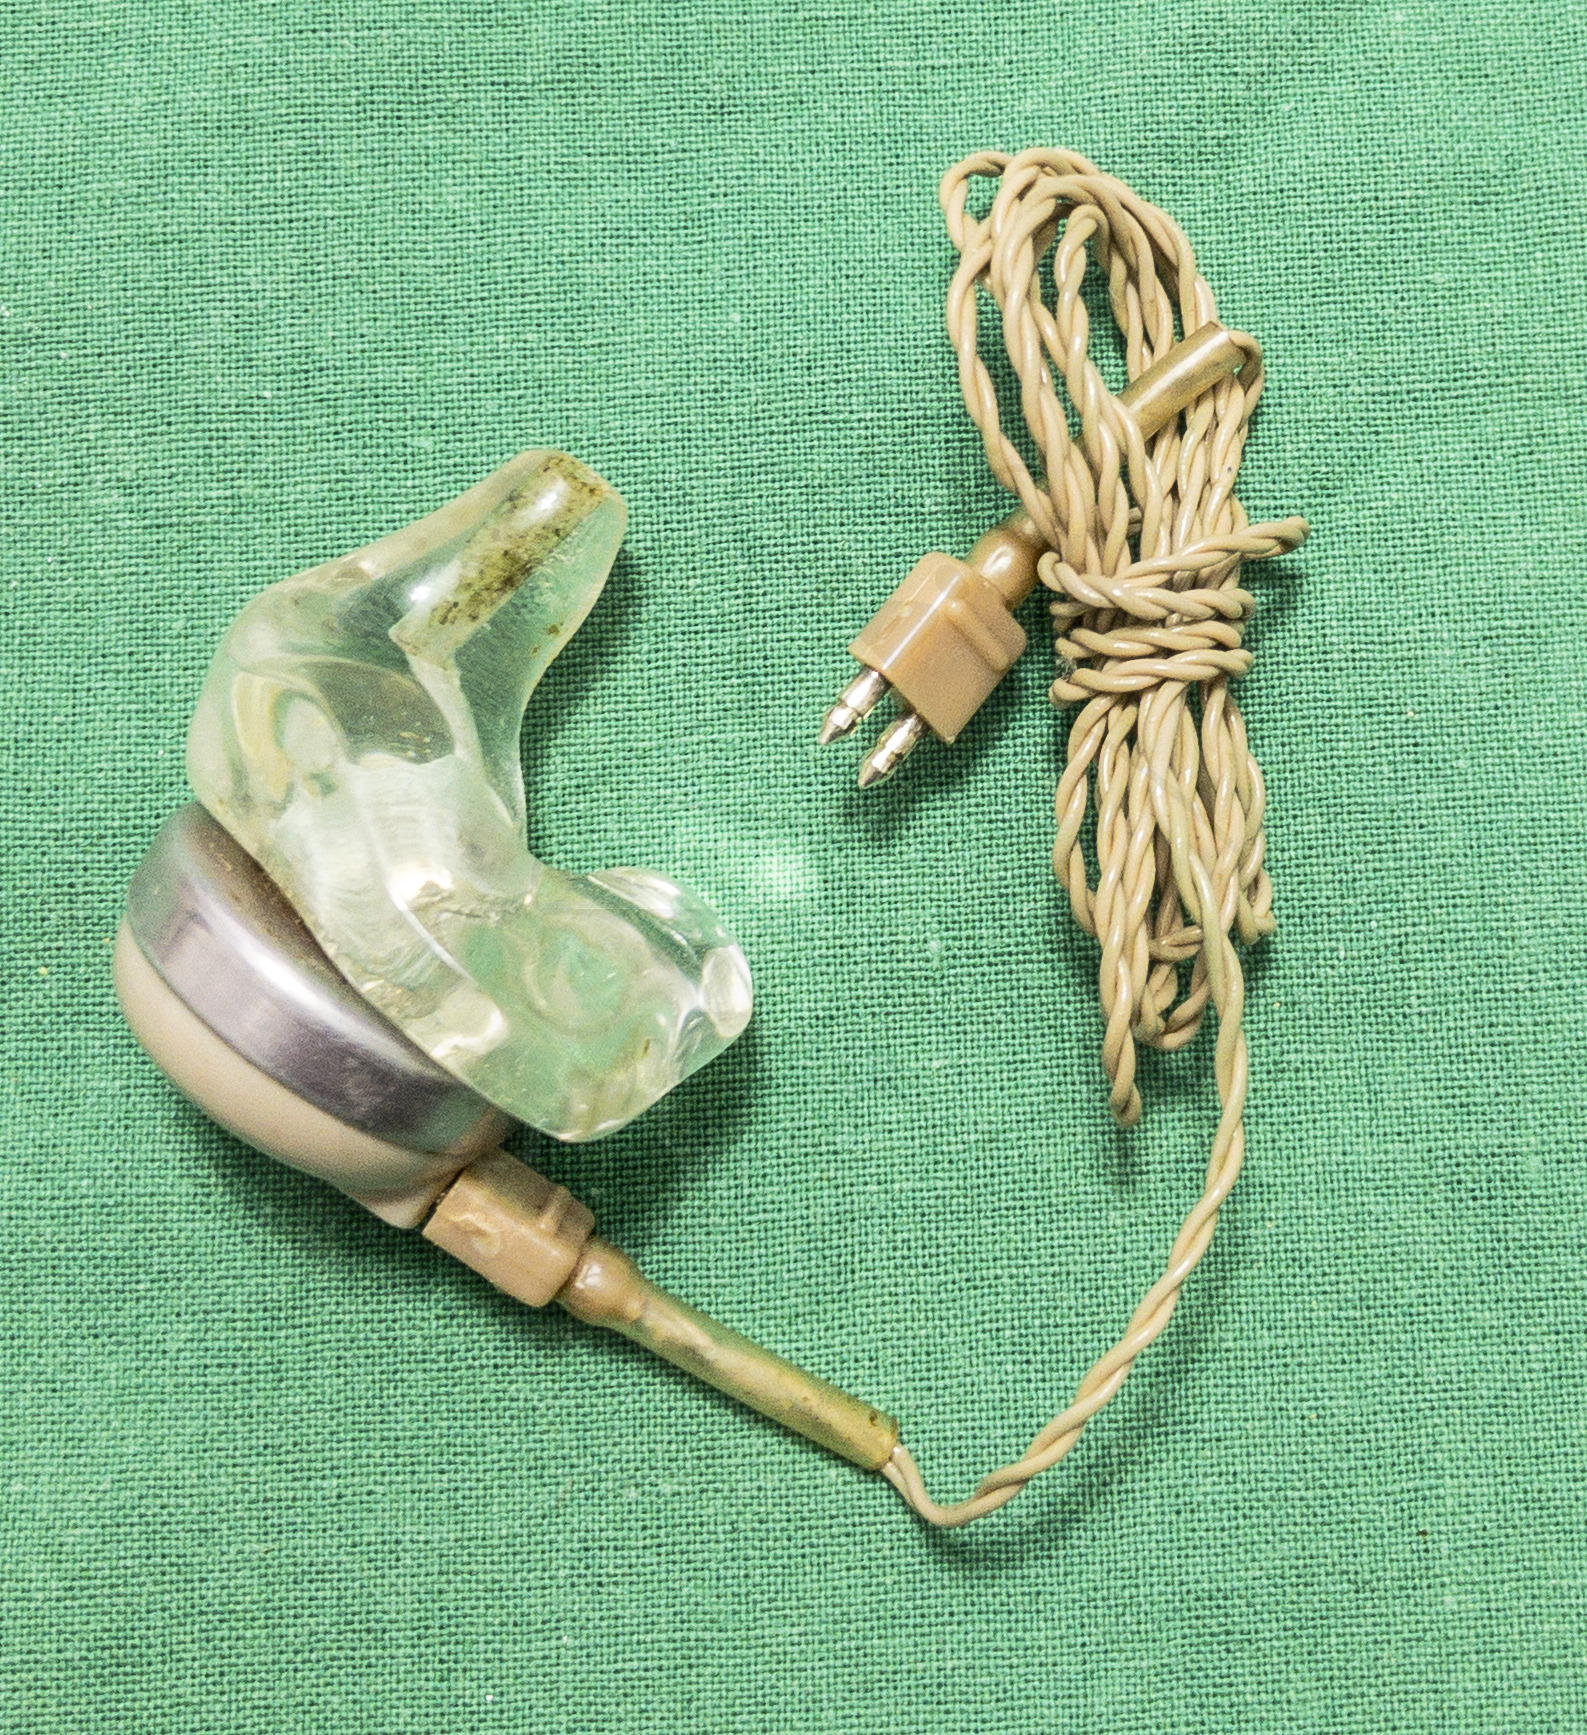 Hörgerät "Fortiphone Type 20", ca. 1949, Ohrhörer mit Aufsatz und Kabel